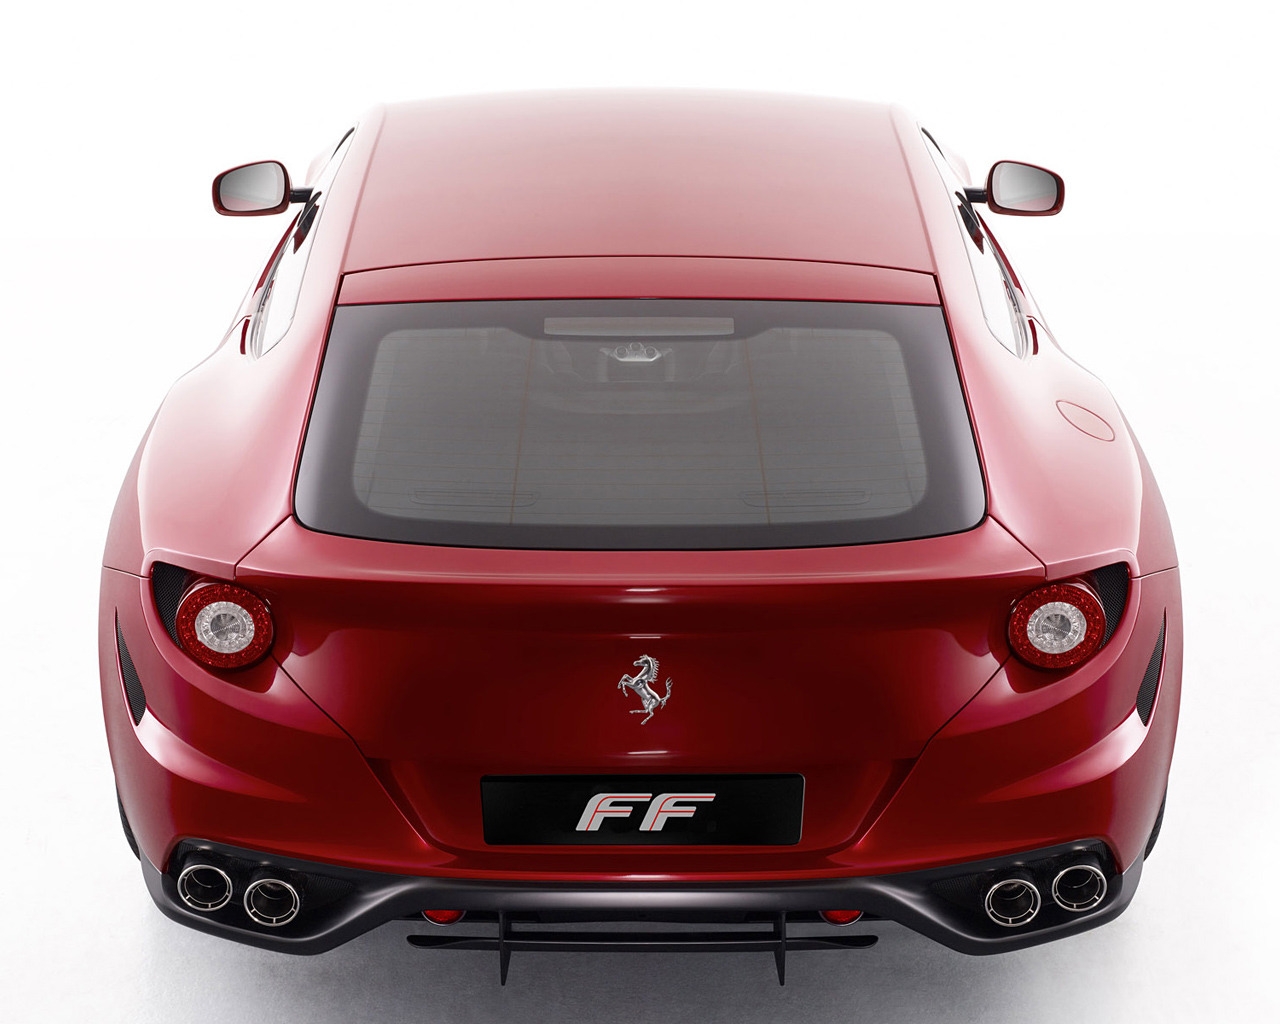 Ferrari FF Rear for 1280 x 1024 resolution